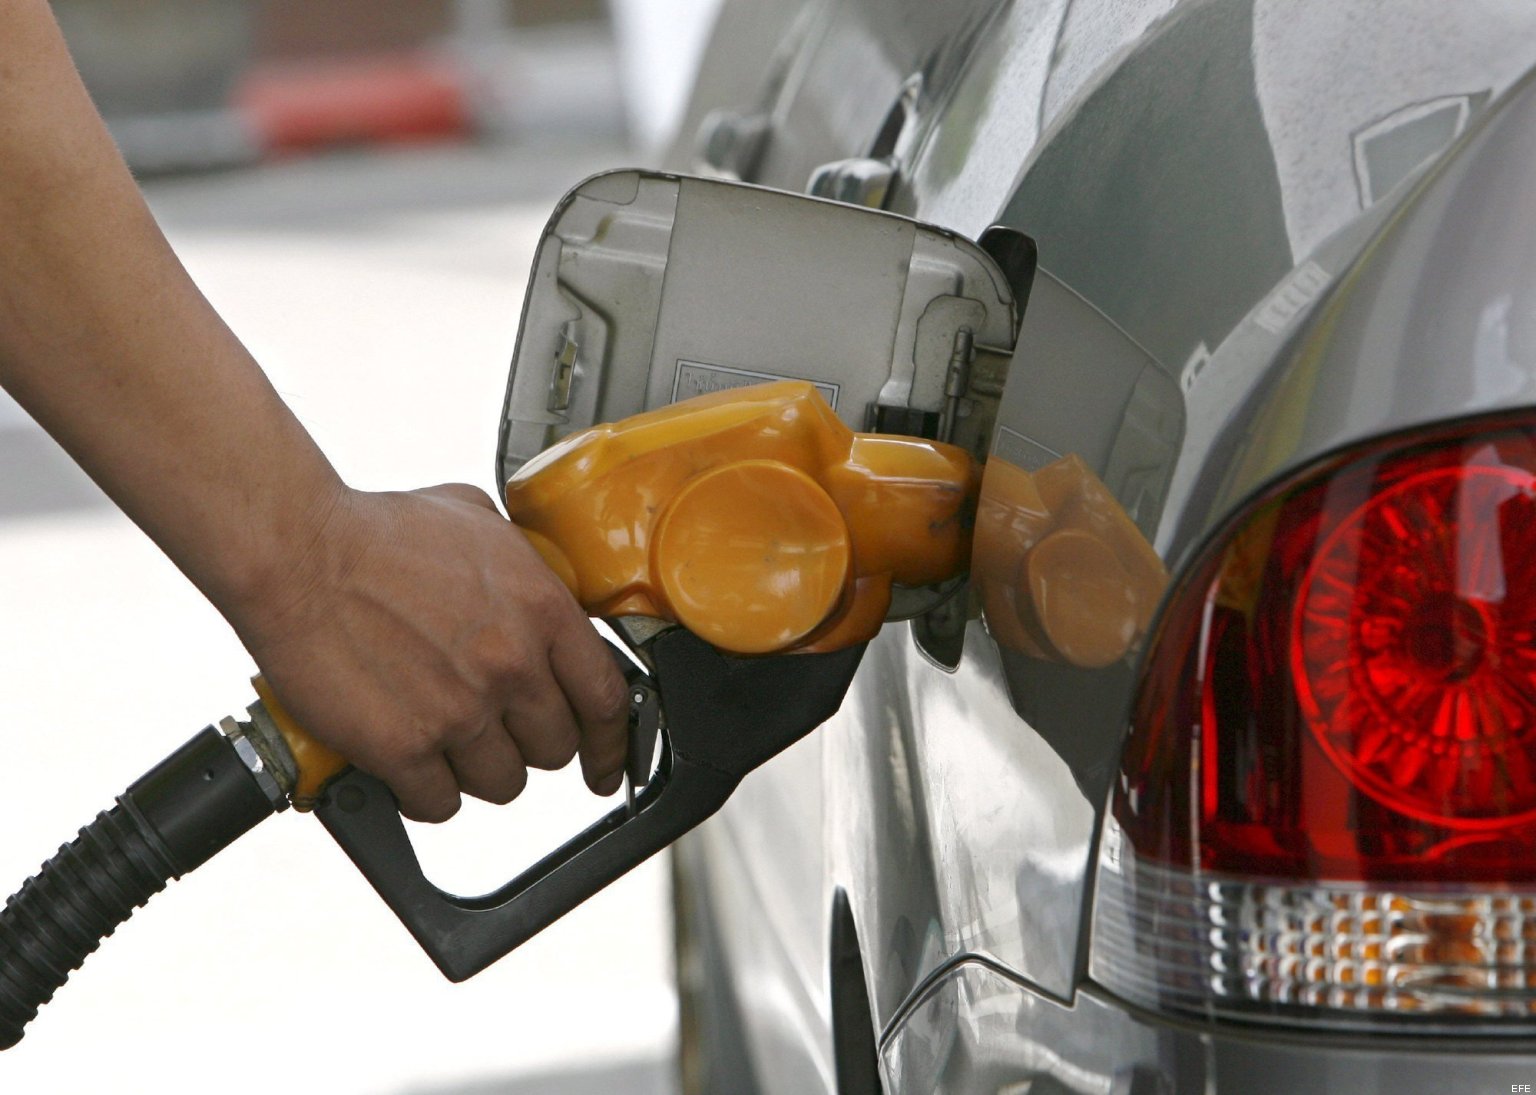 Recope pide alza de ¢21 por litro de diésel y rebaja de ¢1 en gasolina súper